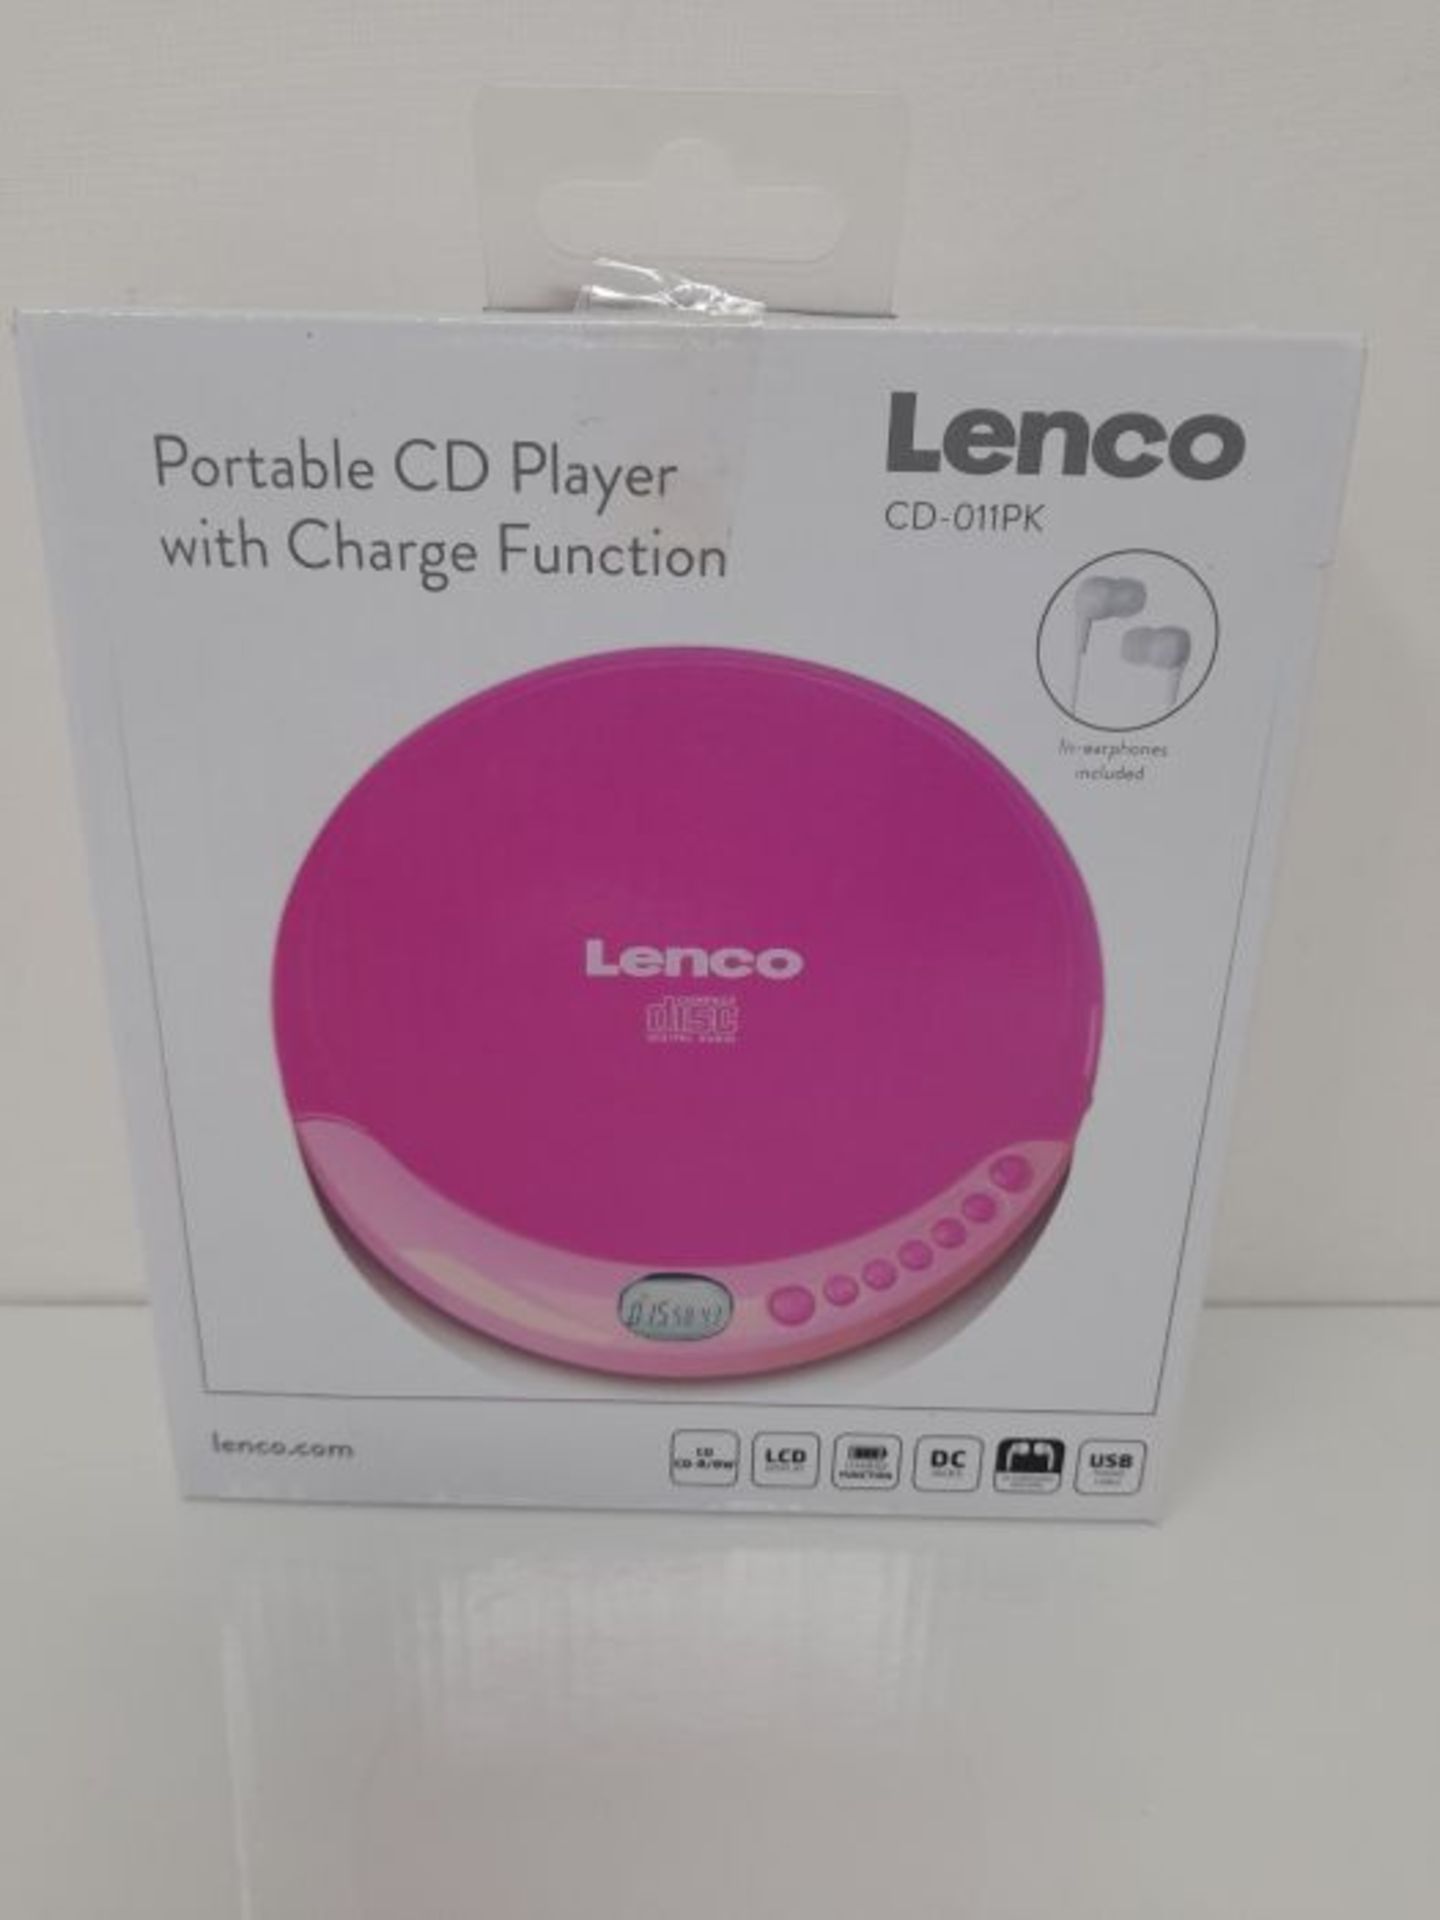 [INCOMPLETE] Lenco CD-011 - Portable CD Player Walkman - Diskman - CD Walkman - with H - Image 2 of 3